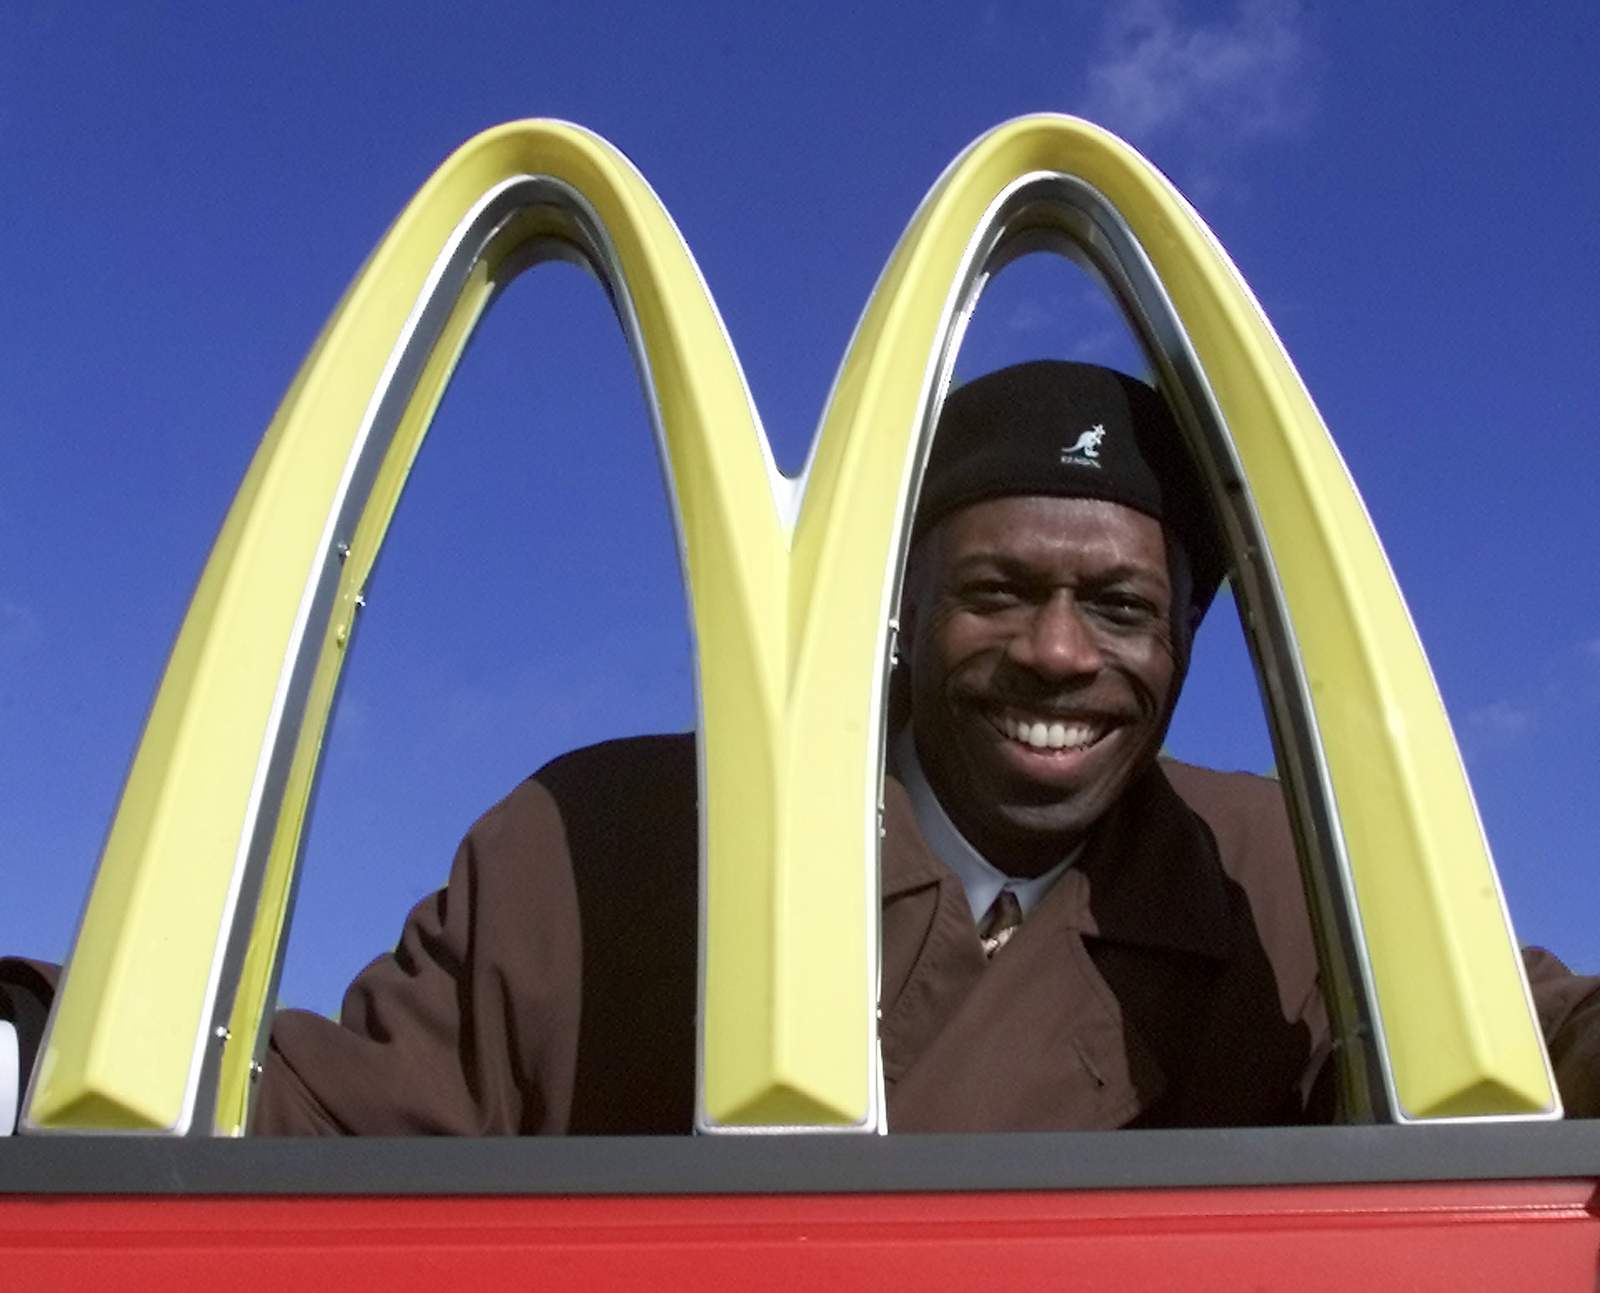 Black franchise owner sues McDonald’s, cites persistent bias